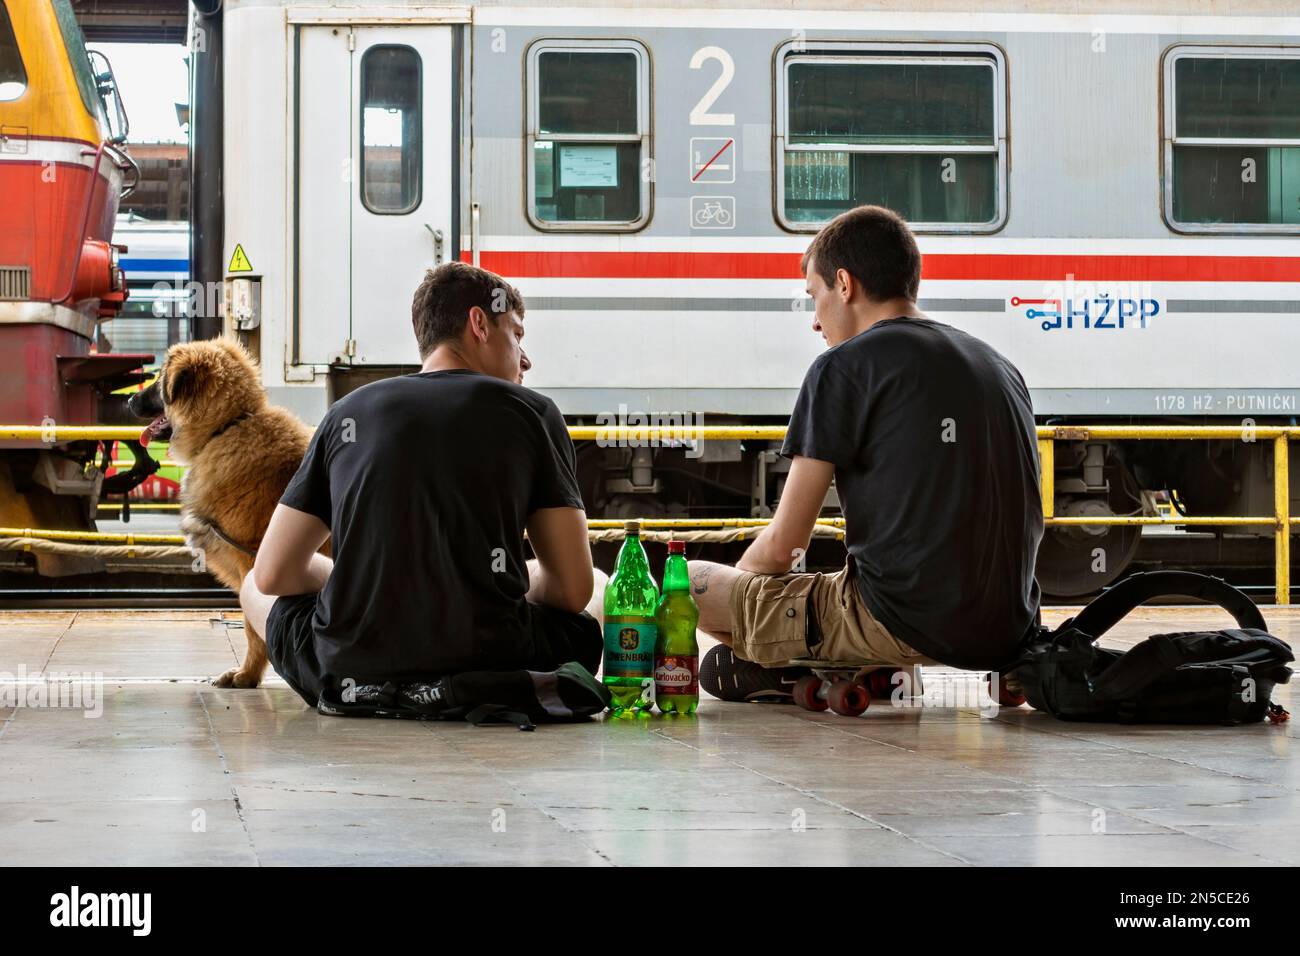 Zwei junge Männer, die sich unterhalten, mit ihrem Hund reisen, sitzen auf dem Bahnsteig Glavni Kolodvor. Zagreb, Kroatien, Europa, Europäische Union Stockfoto